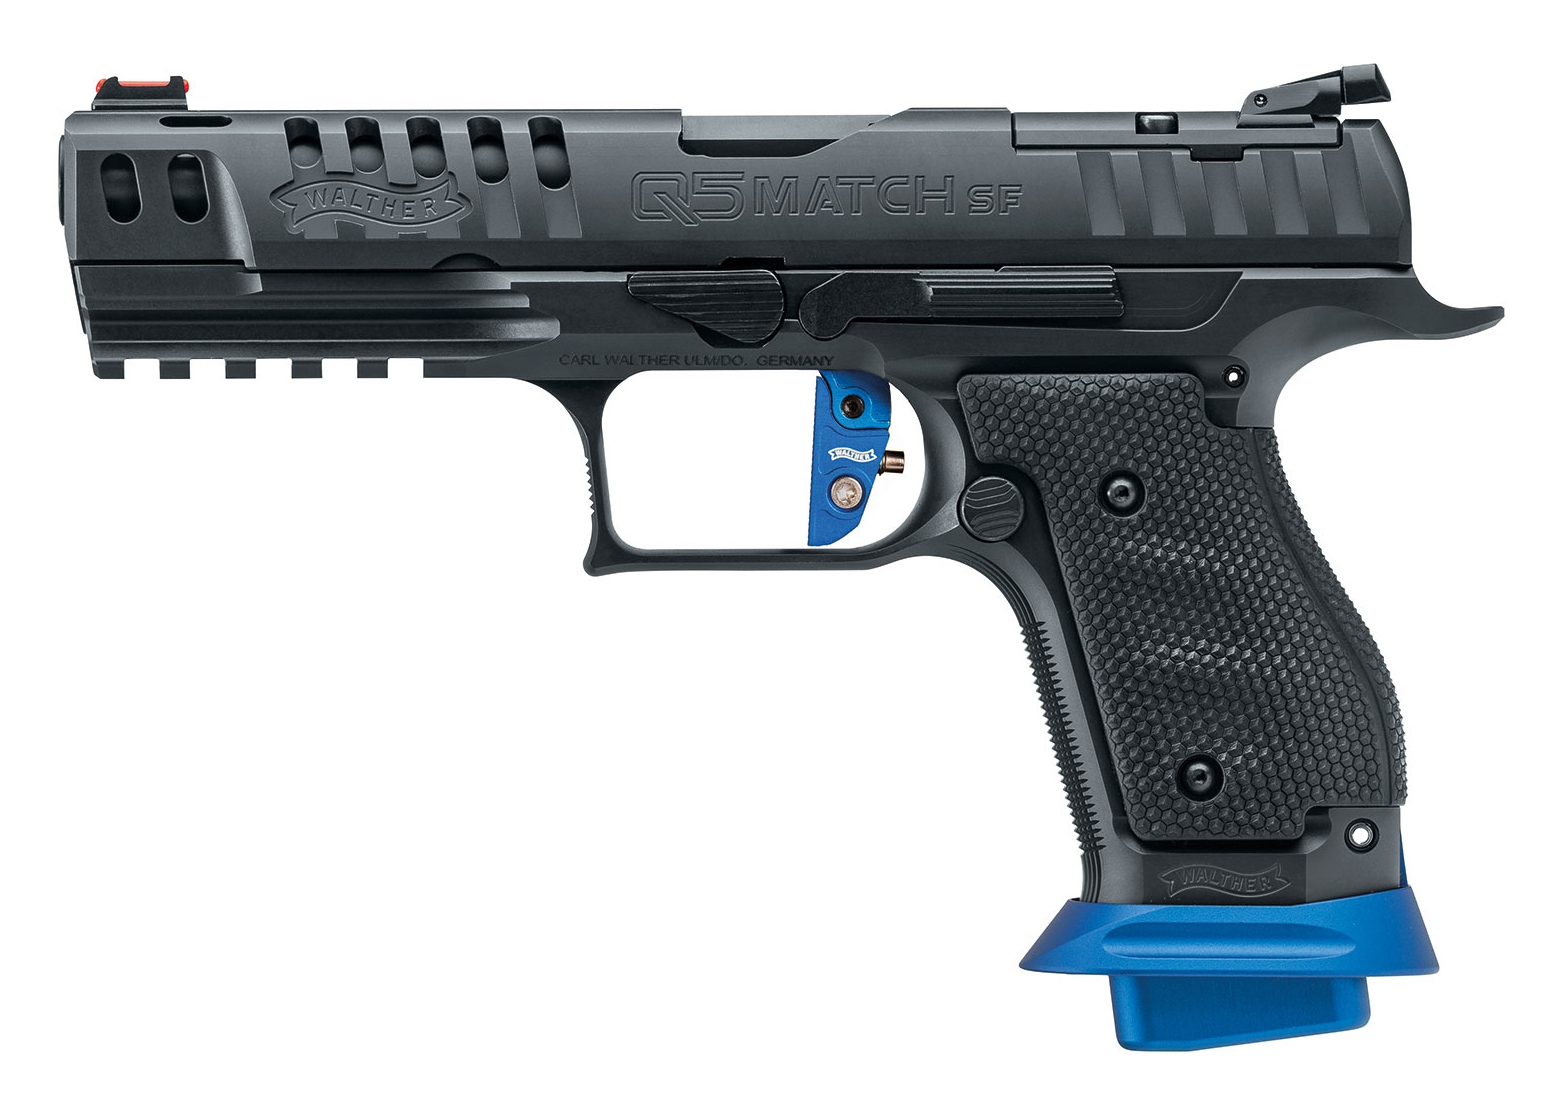 Le Walther modèle Q5 Match SF Expert, qui est destiné aux compétiteurs et n’est malheureusement pas actuellement importé en France, bénéficie d’une queue de détente droite, en aluminium de couleur bleue, dont la pré-course et le backlash sont réglables.